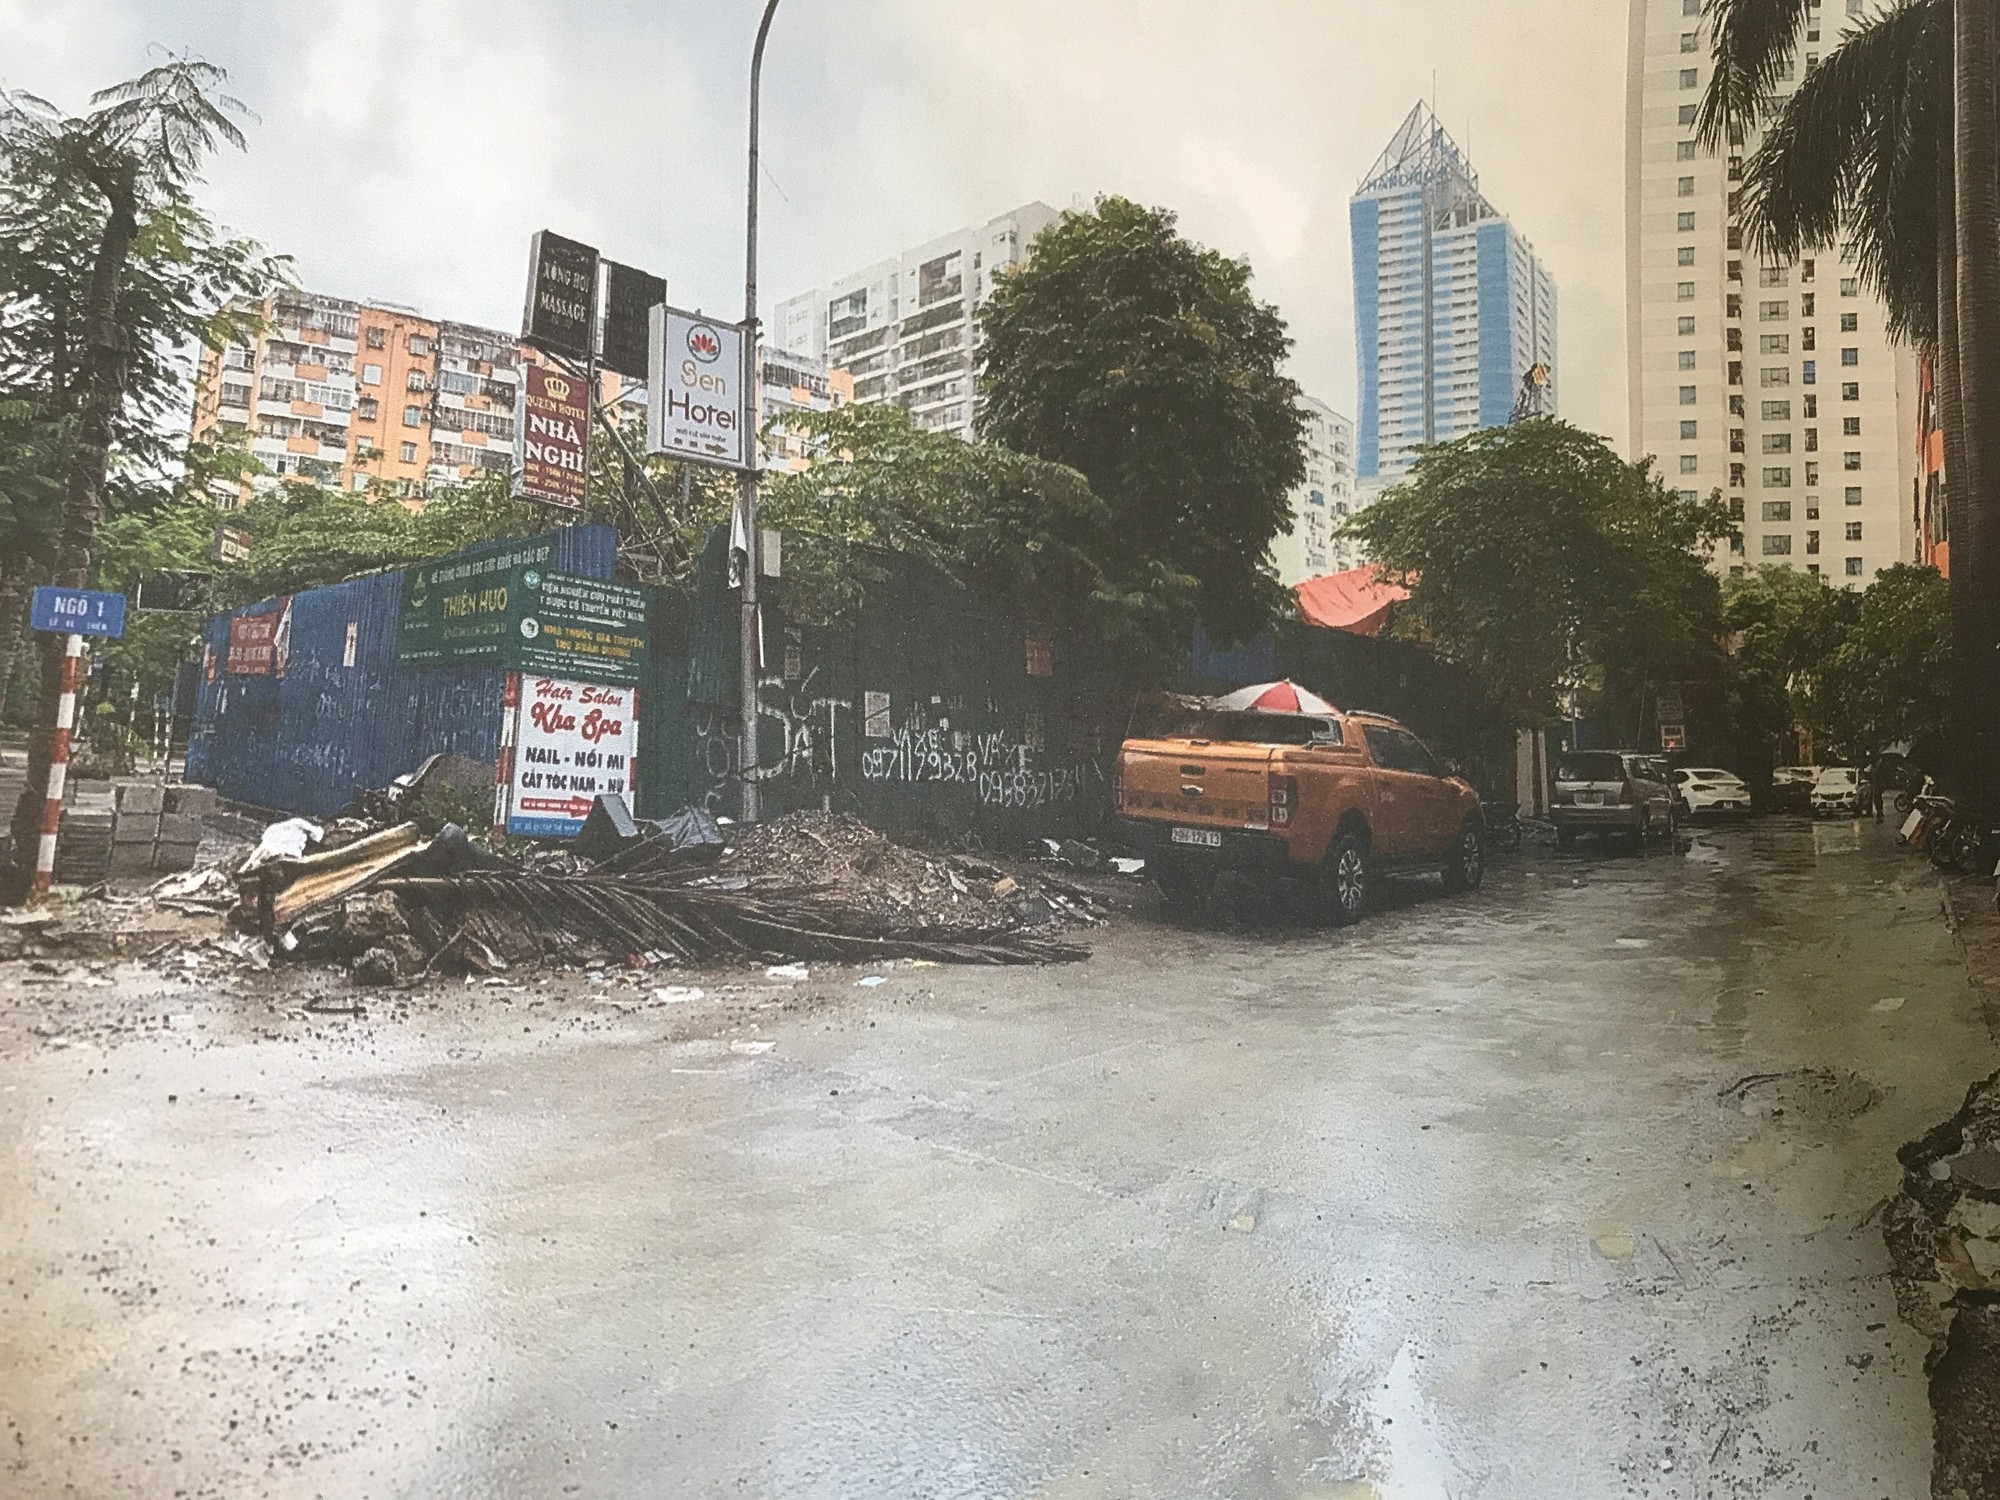 Con đường trước đây khi chưa bị dự án sai quy hoạch đường Lê Văn Lương rào chắn (Ảnh: NDCC)